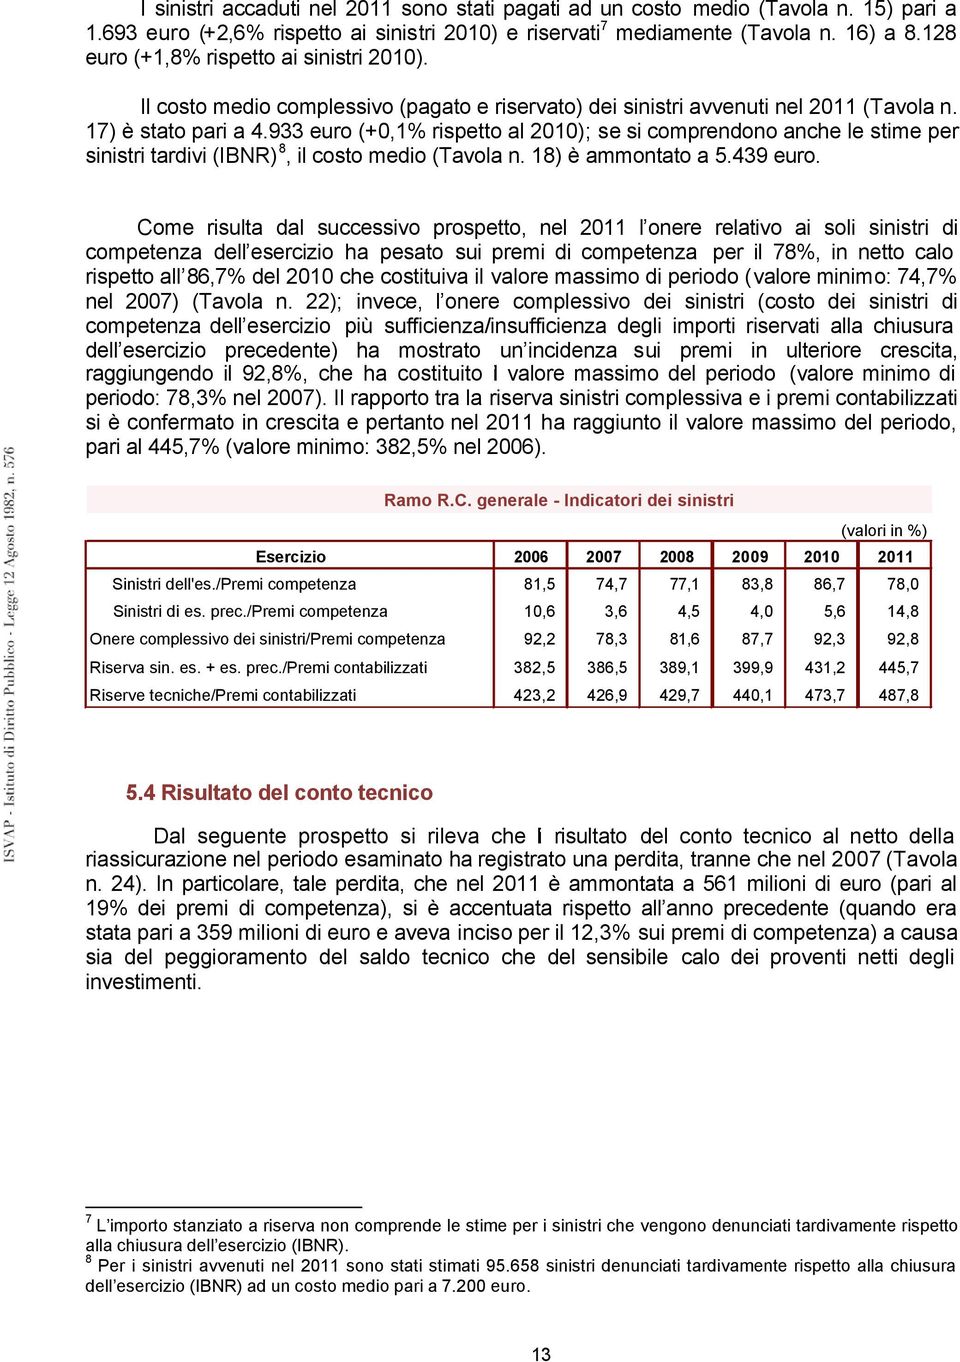 933 euro (+0,1% rispetto al 2010); se si comprendono anche le stime per sinistri tardivi (IBNR) 8, il costo medio (Tavola n. 18) è ammontato a 5.439 euro.